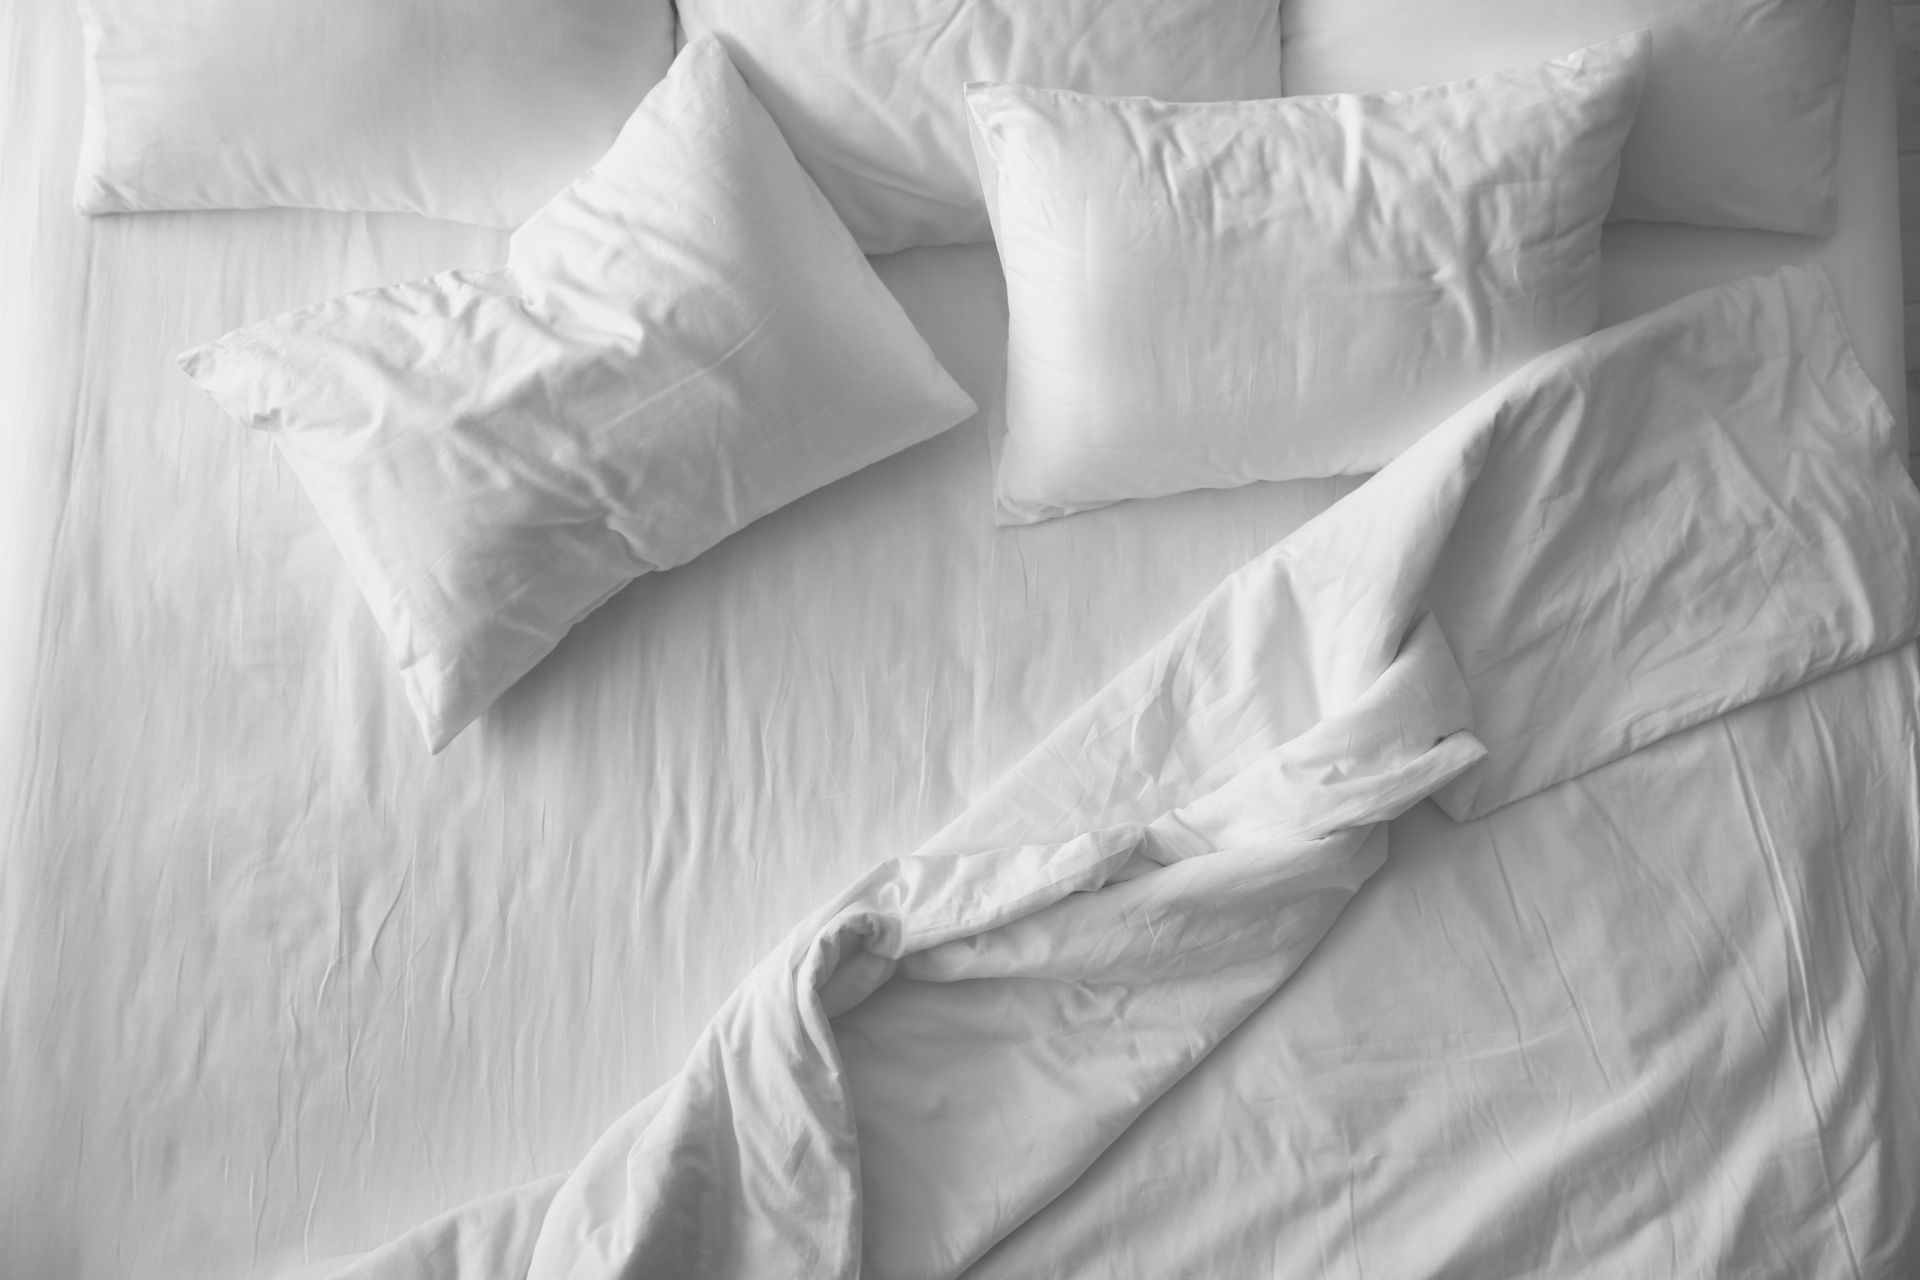 постельное белье для надувных кроватей